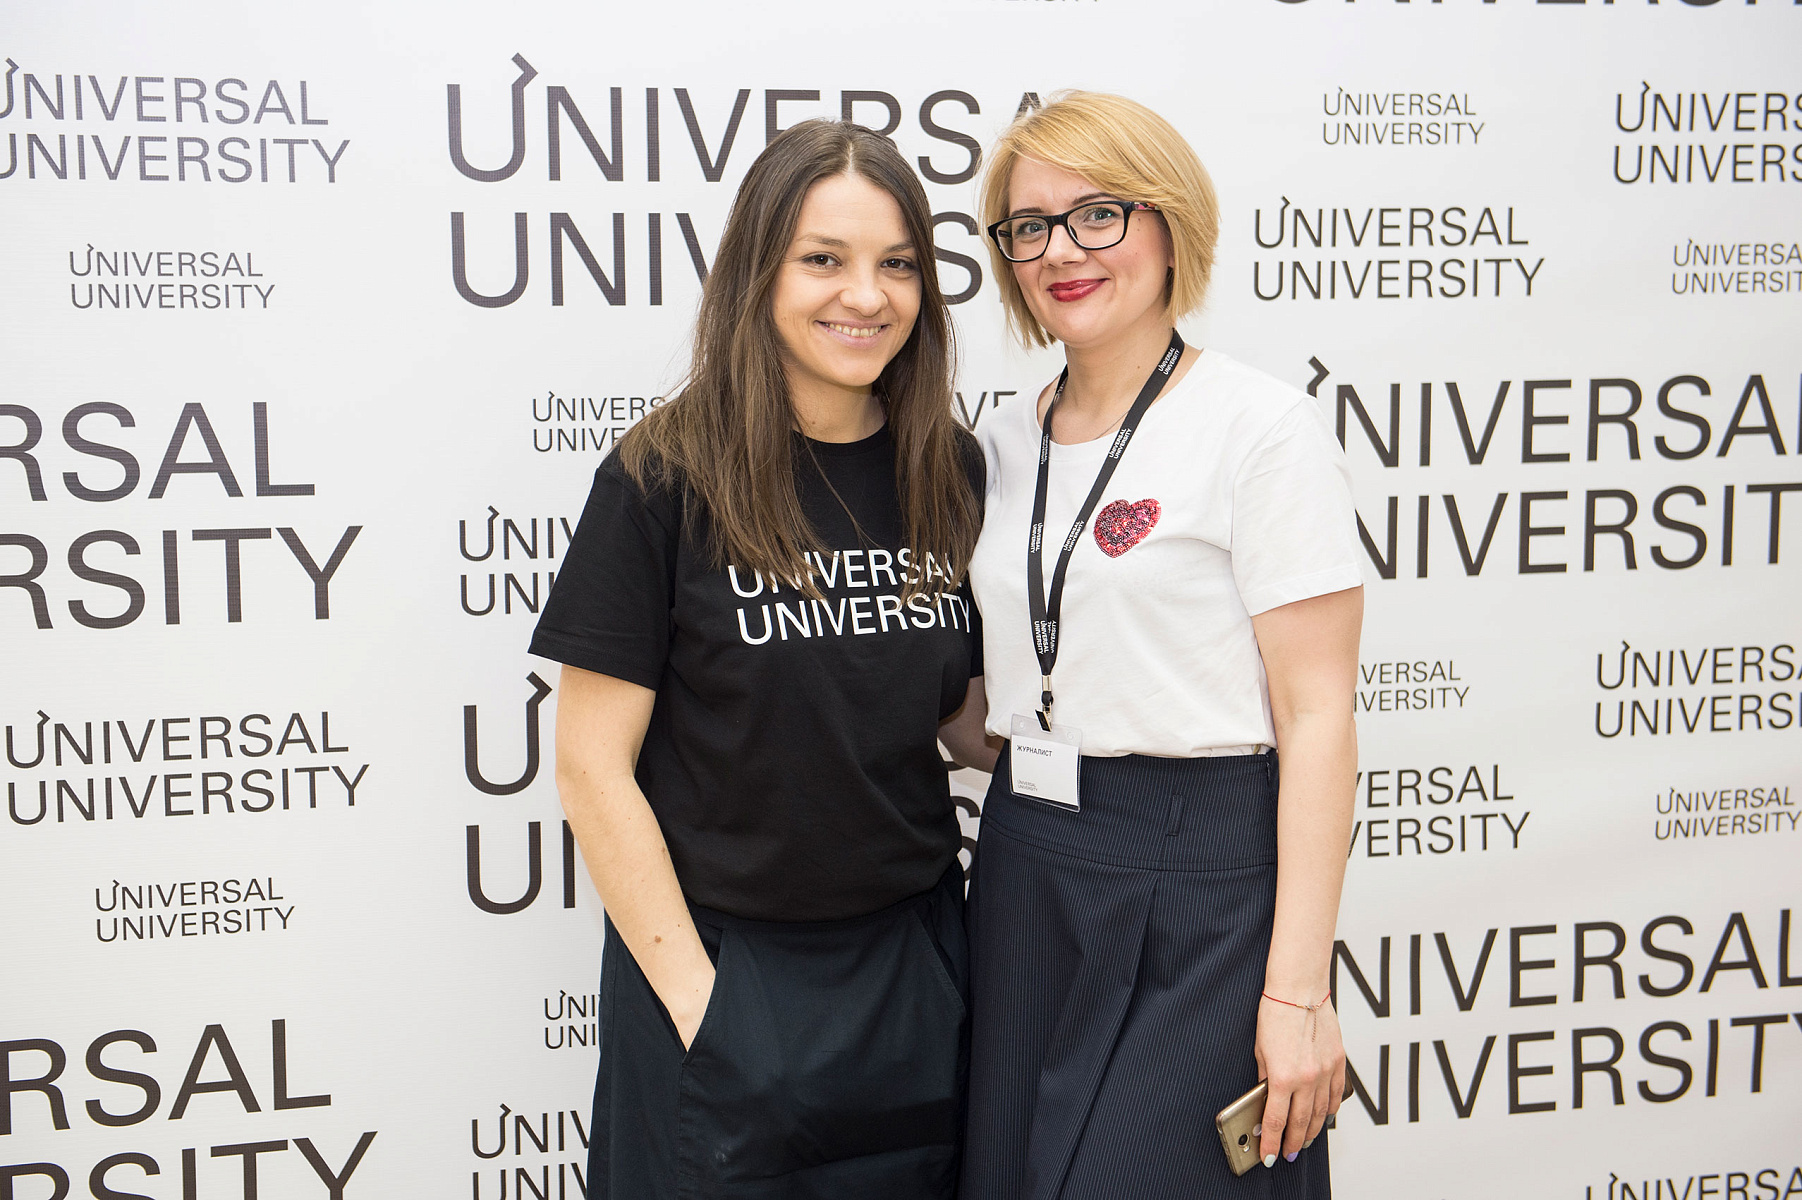 Universal university. Universal University логотип. Британская Высшая школа дизайна в Москве.